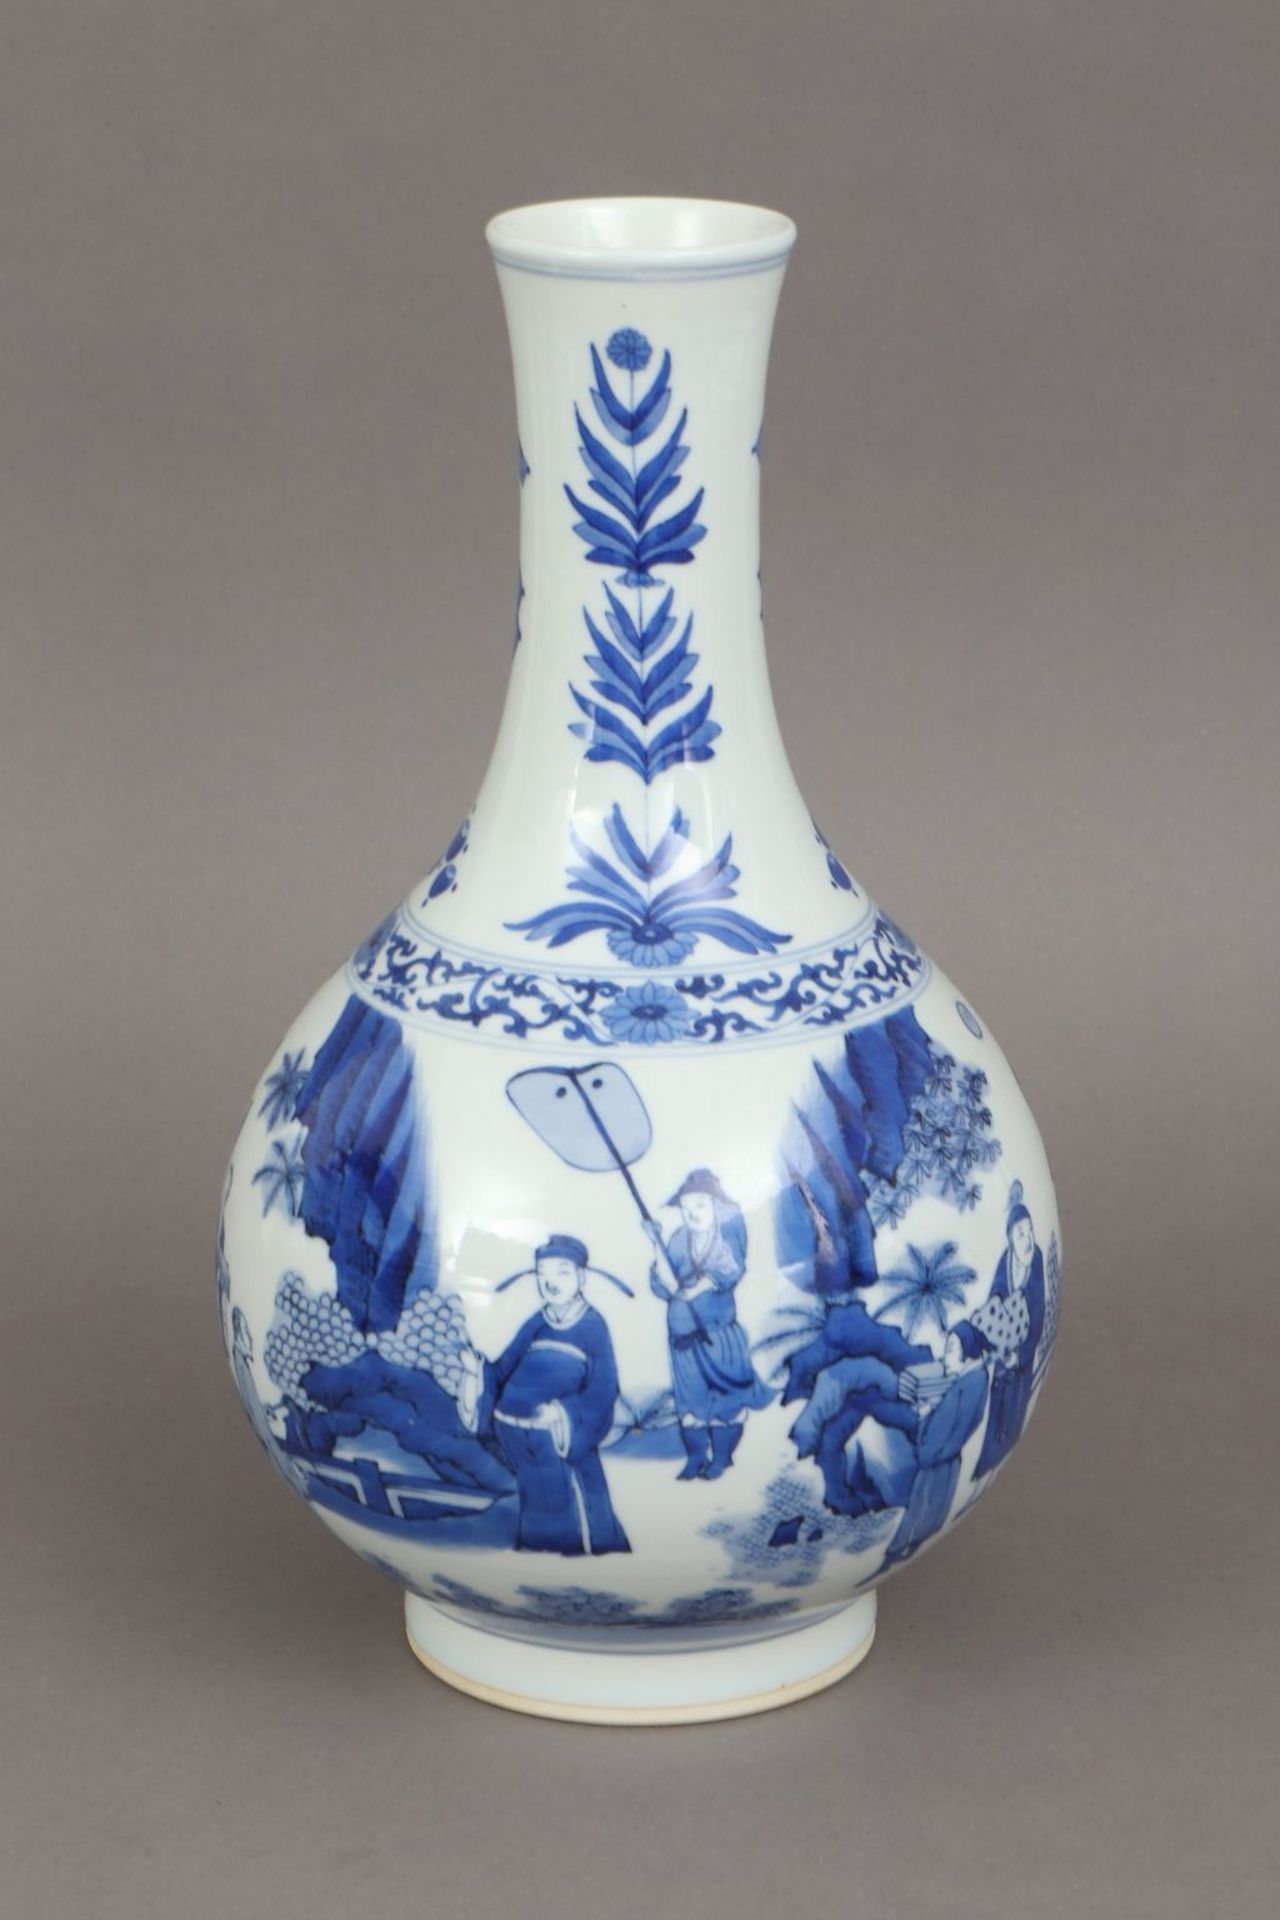 Chinesische Porzellanvase mit Blaumalereiknoblauchförmiger Korpus, umlaufend asiatische Landsc